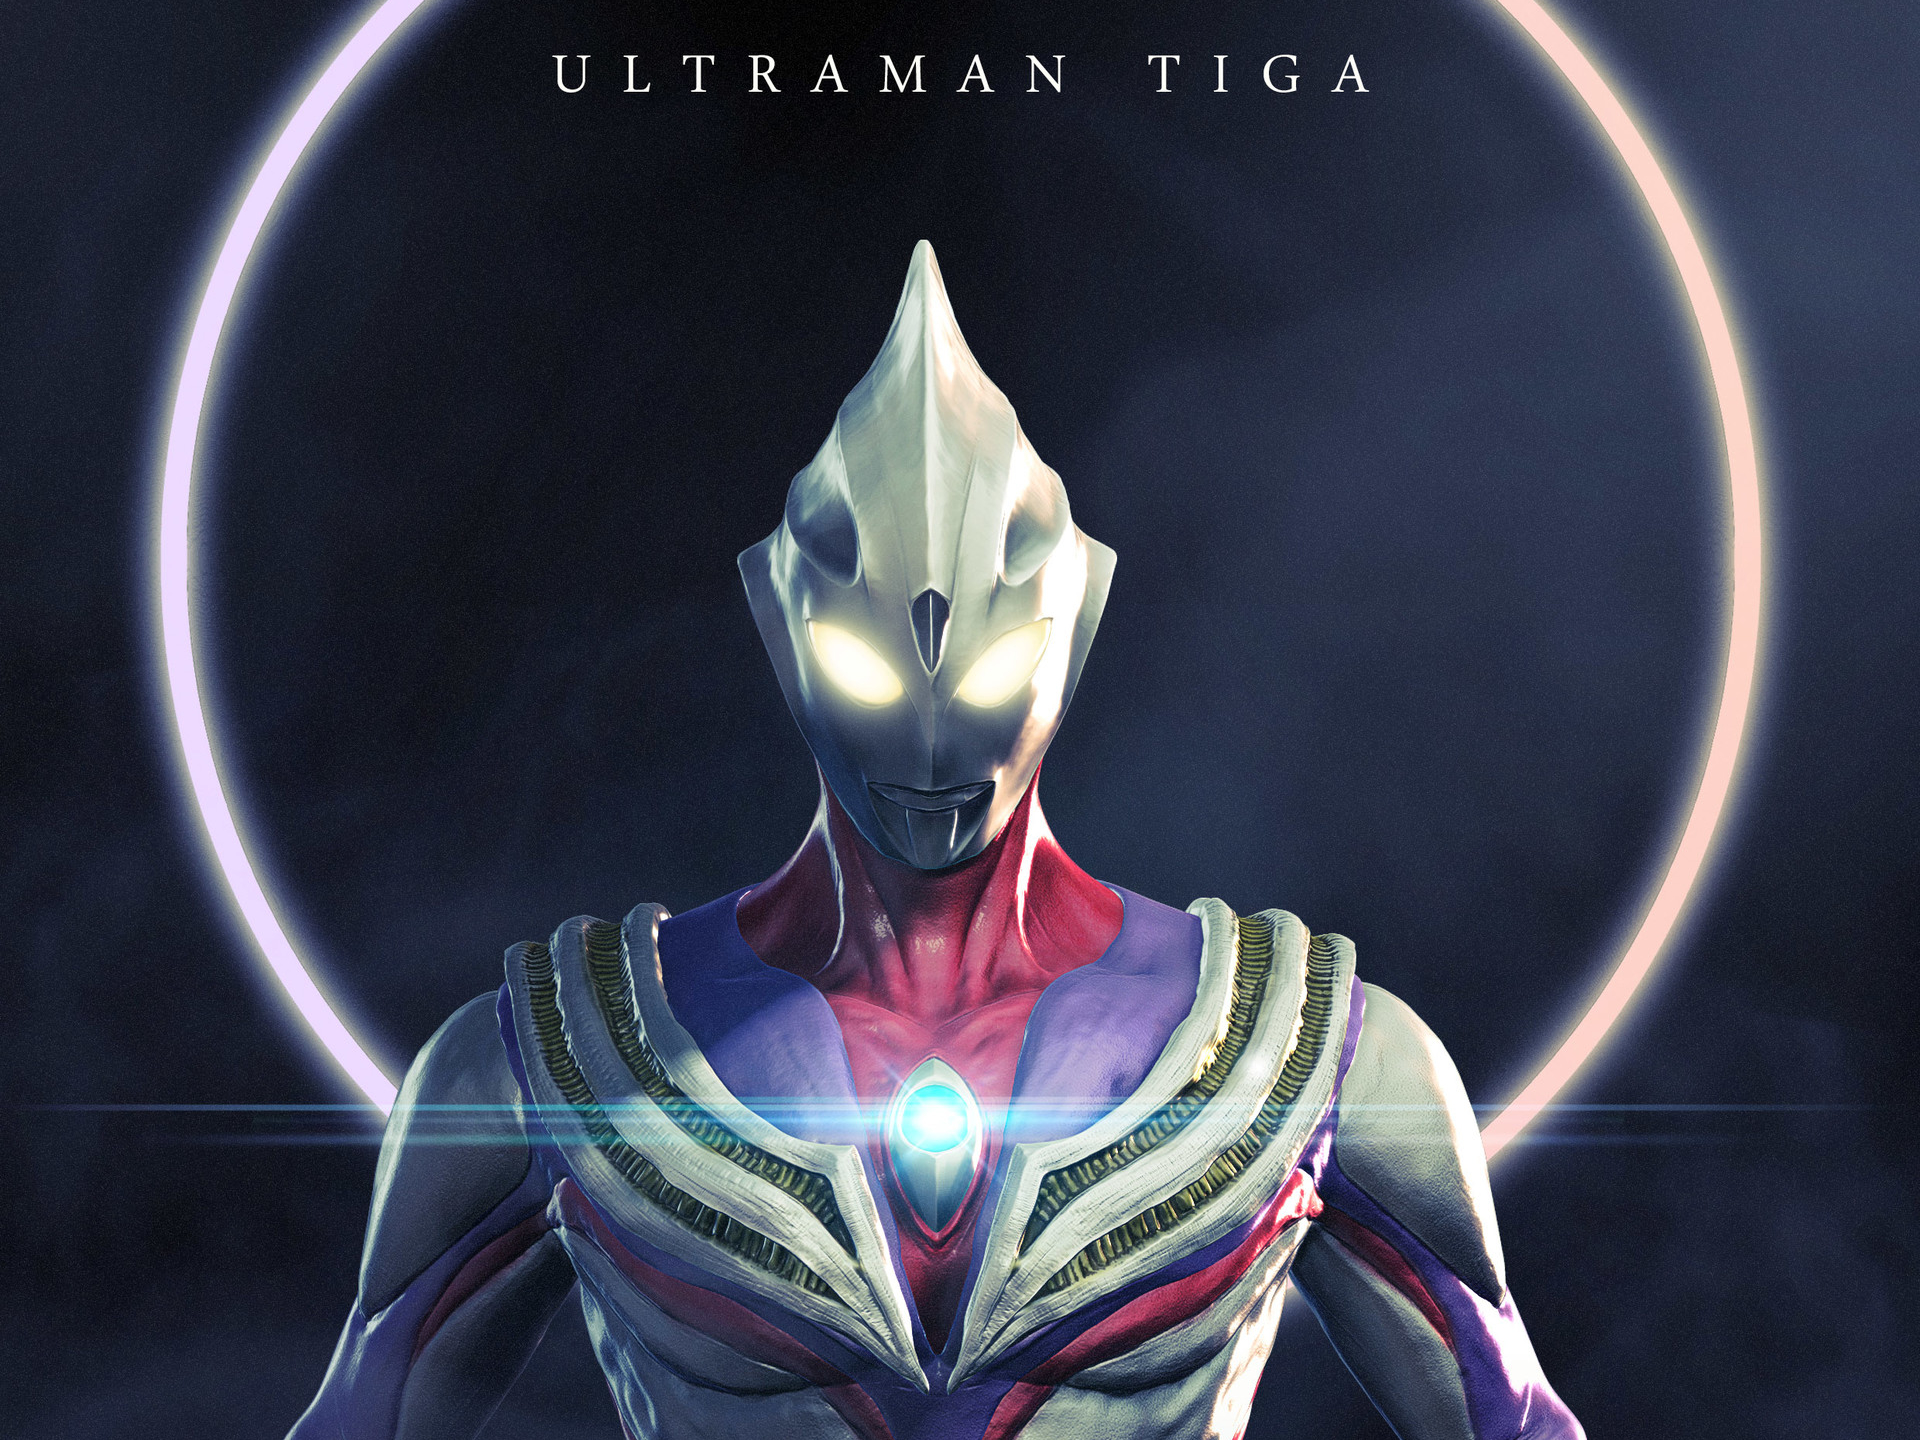 Chất lượng hình ảnh là một yếu tố quan trọng khi bạn muốn trải nghiệm Ultraman Tiga HD. Nếu bạn yêu thích Ultraman và đang tìm kiếm những hình ảnh Ultraman chất lượng cao nhất, hãy xem hình ảnh liên quan đến Ultraman Tiga HD. Đó chắc chắn sẽ là một trải nghiệm tuyệt vời!